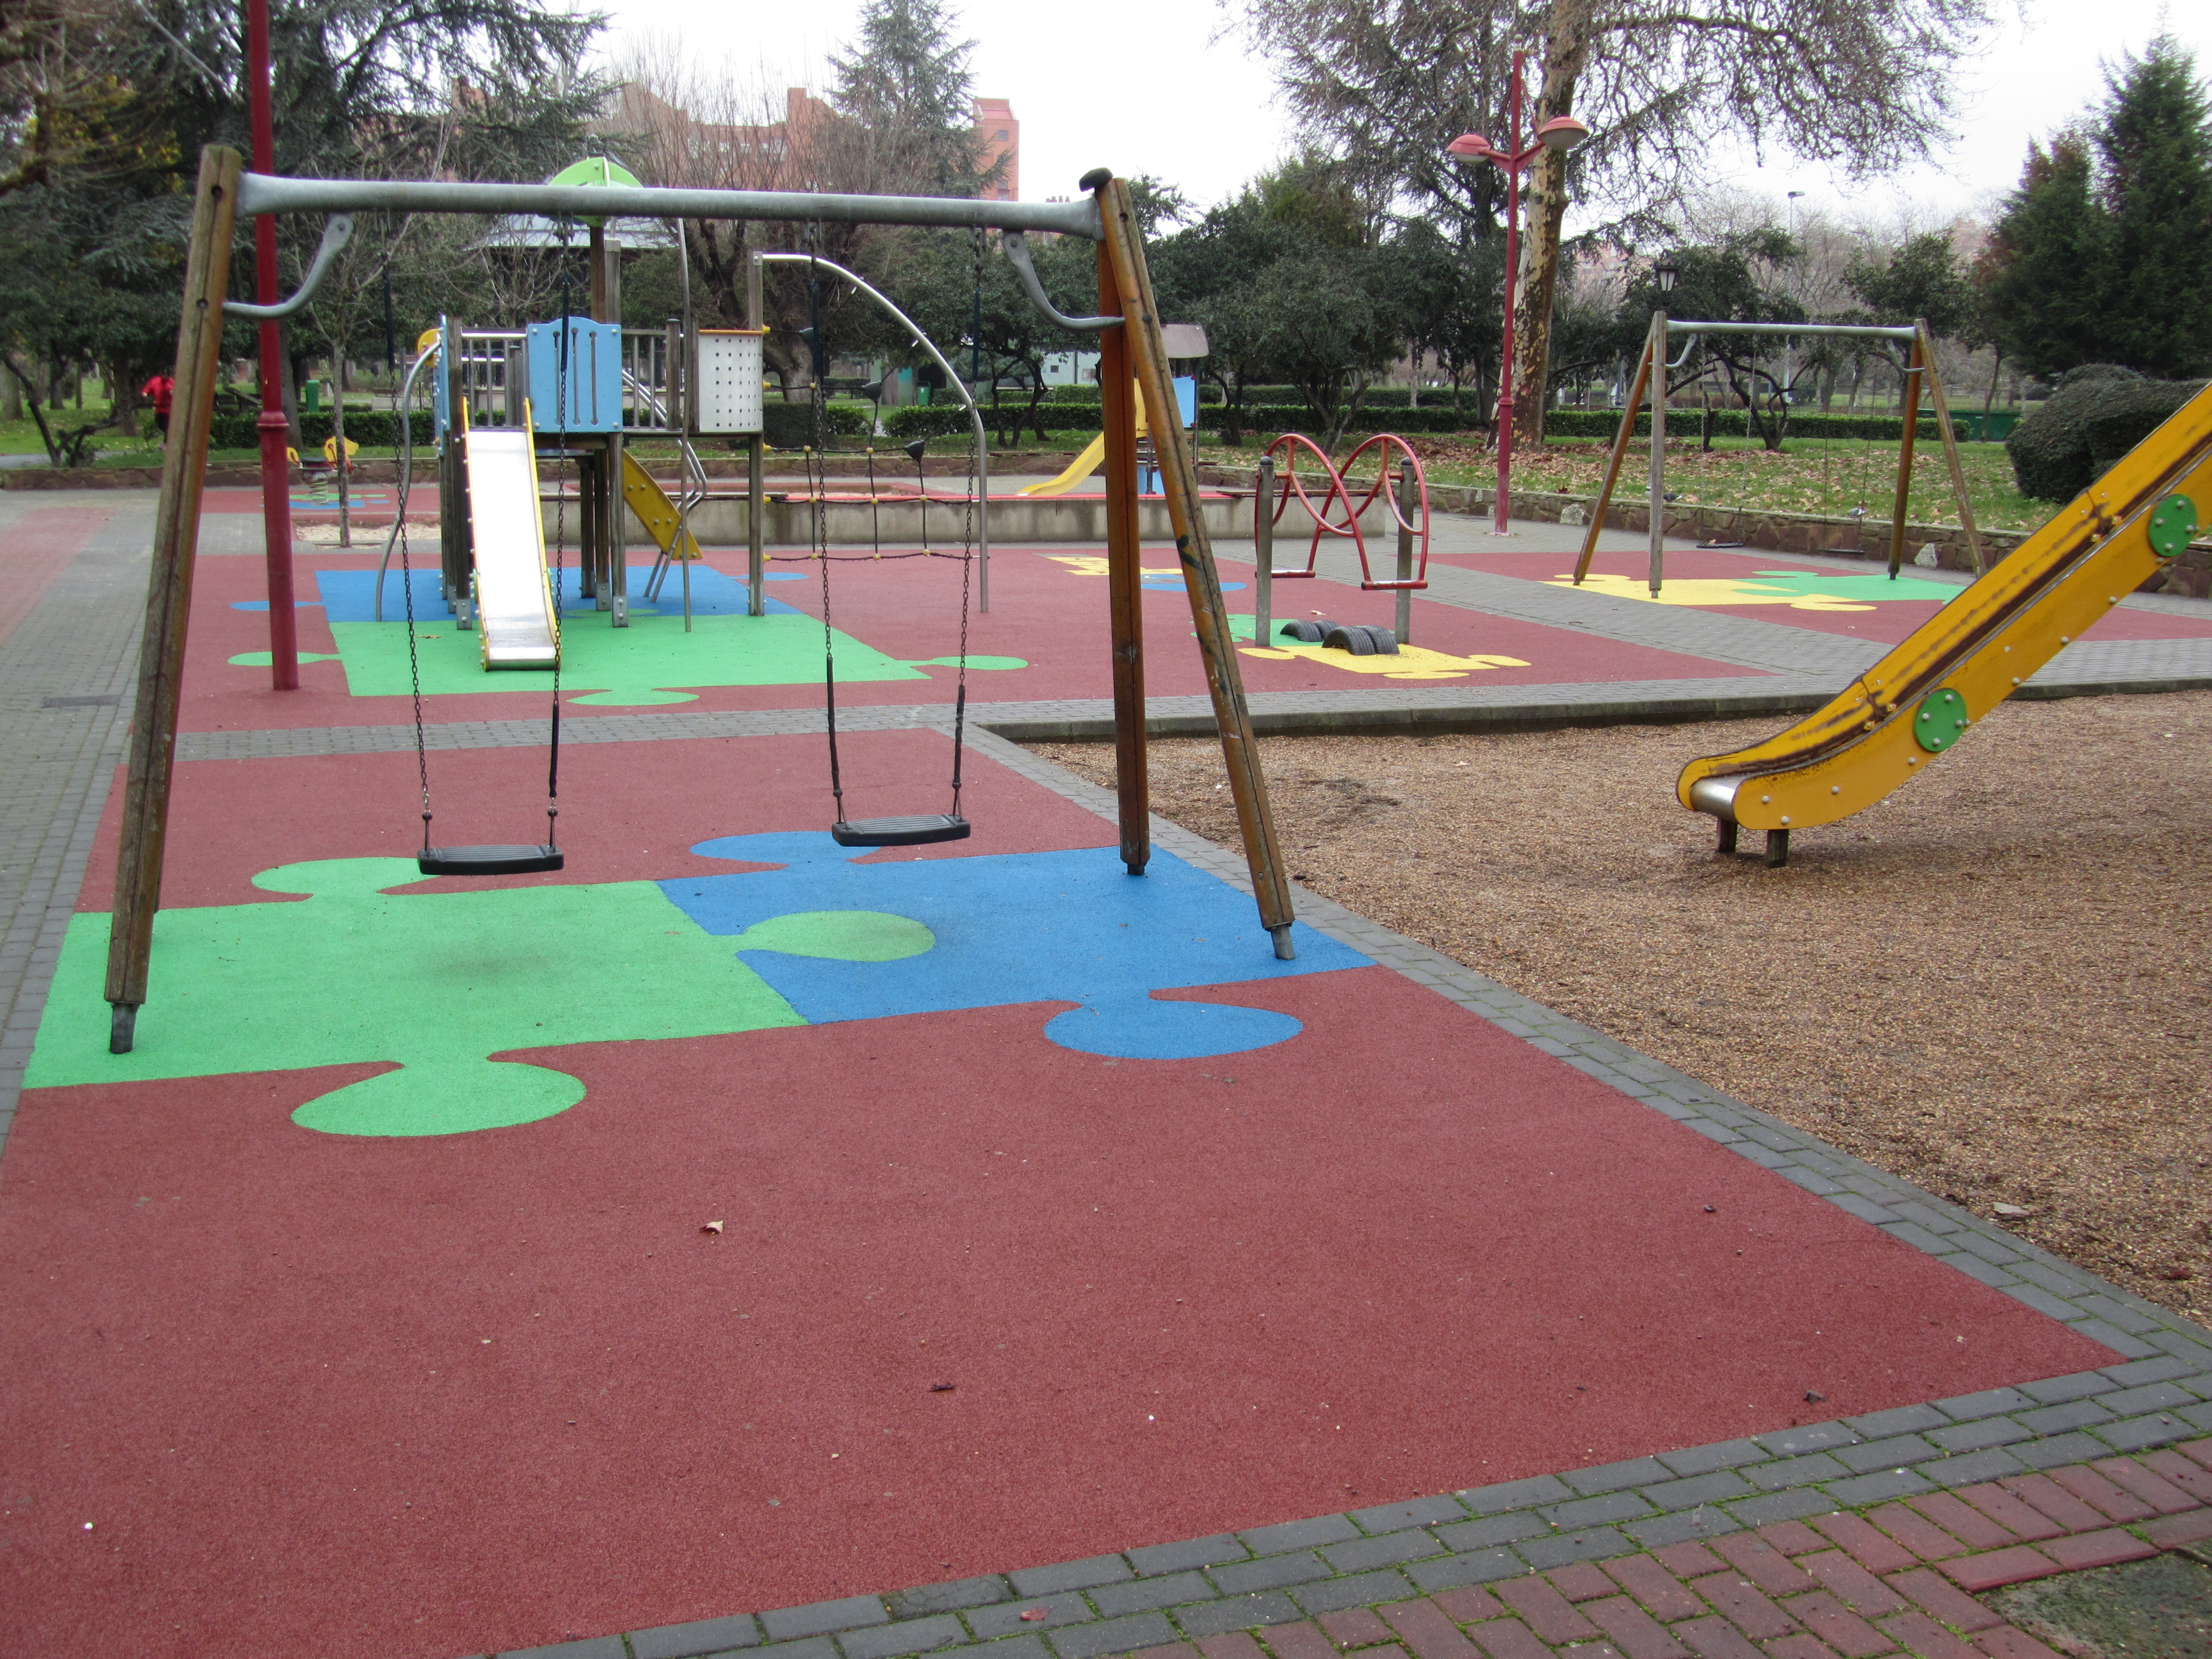 File:Zona de juegos infantiles del Parque de Quevedo.jpg - Wikimedia Commons